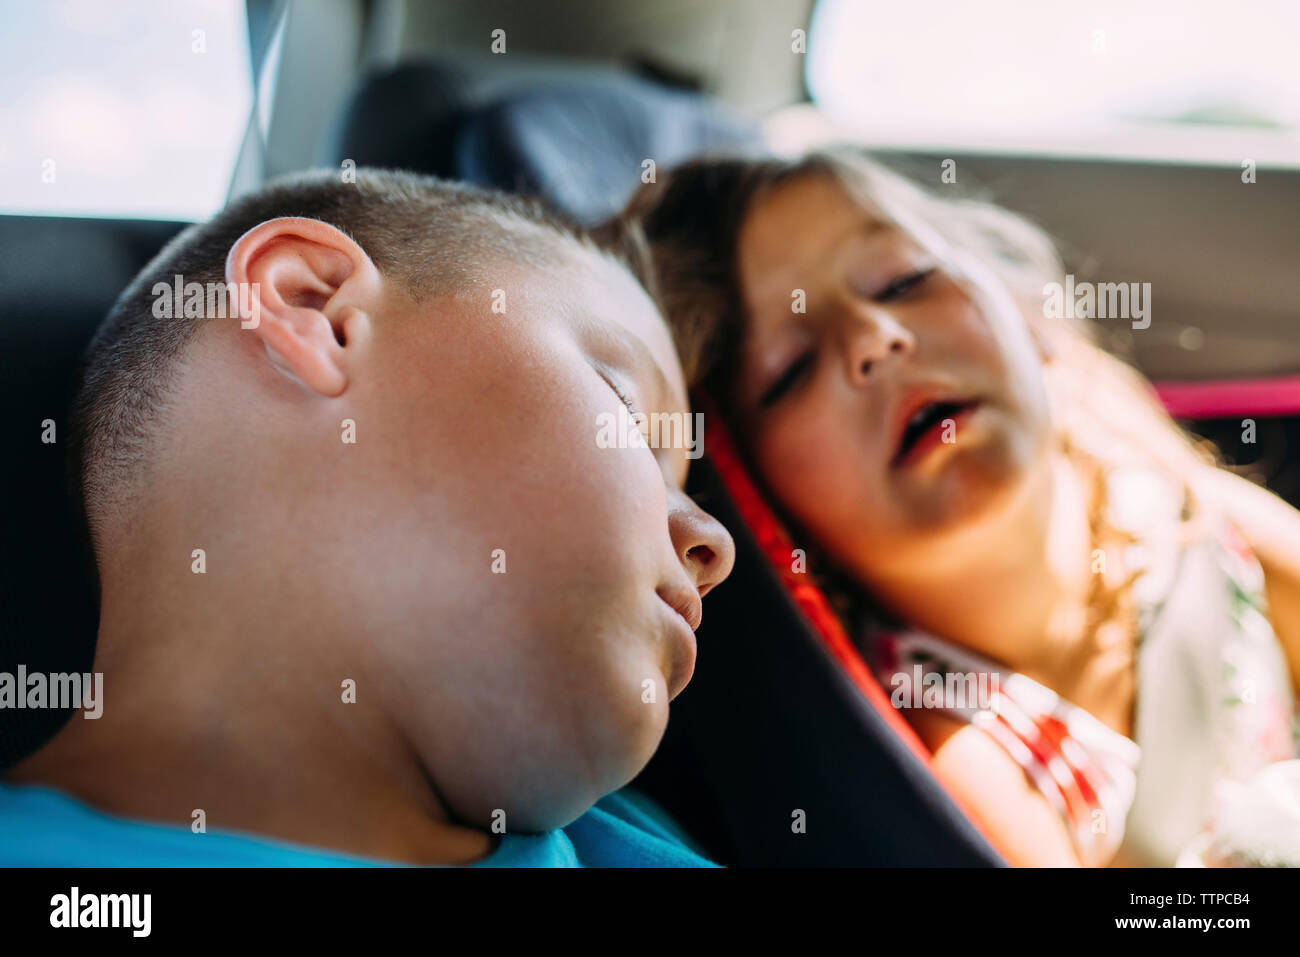 Müde Geschwister im Auto schlafen Stockfotografie - Alamy